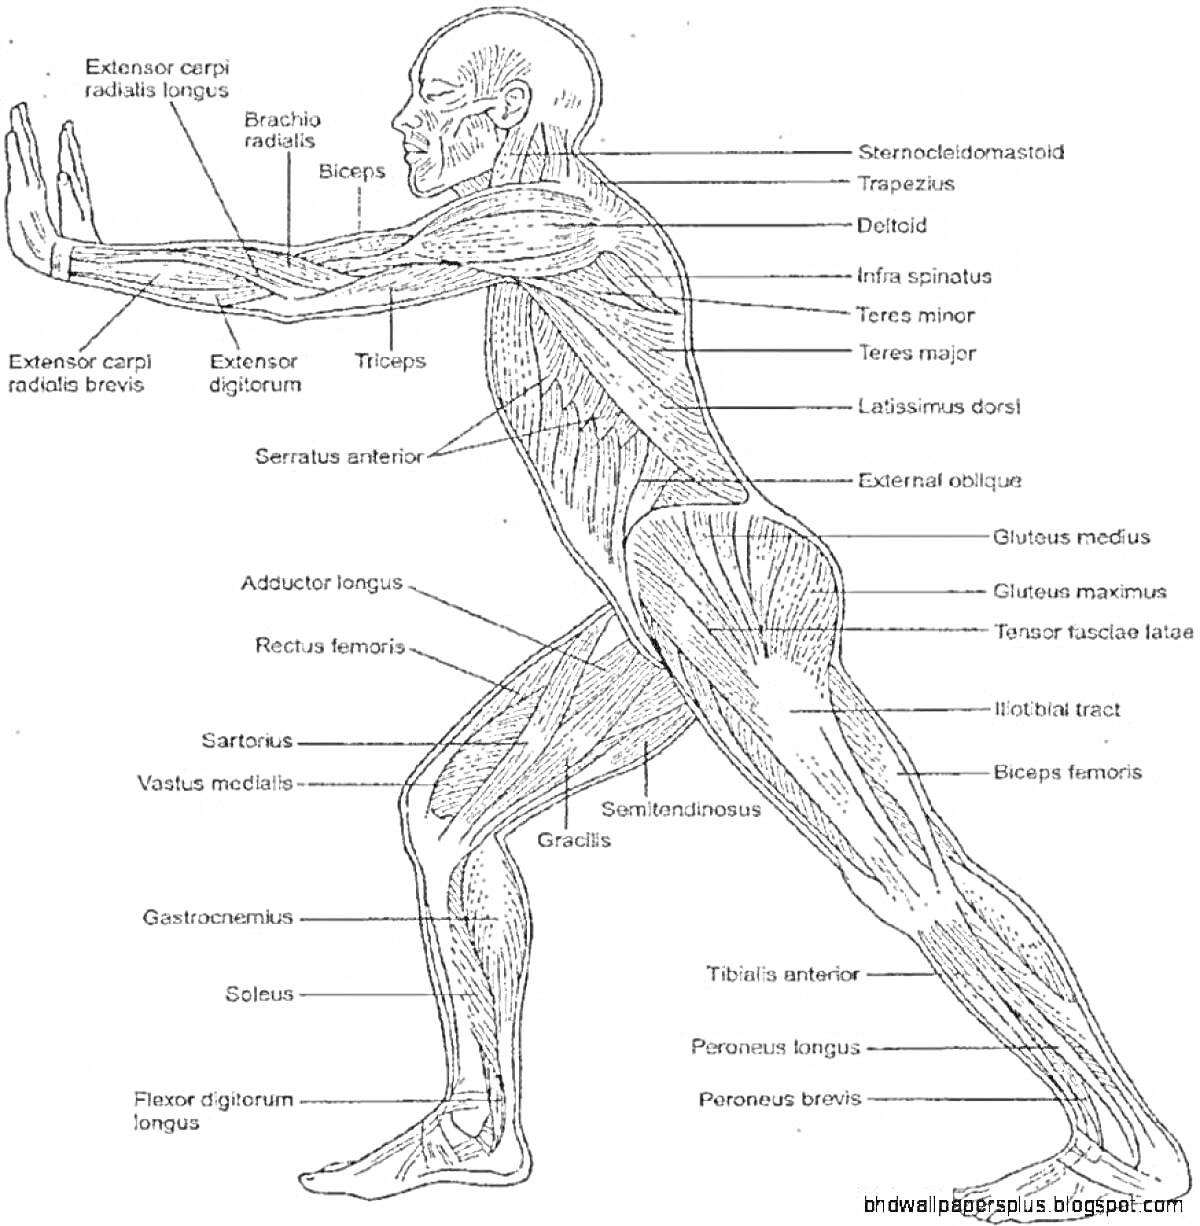 Анатомический атлас йоги с обозначением мышц